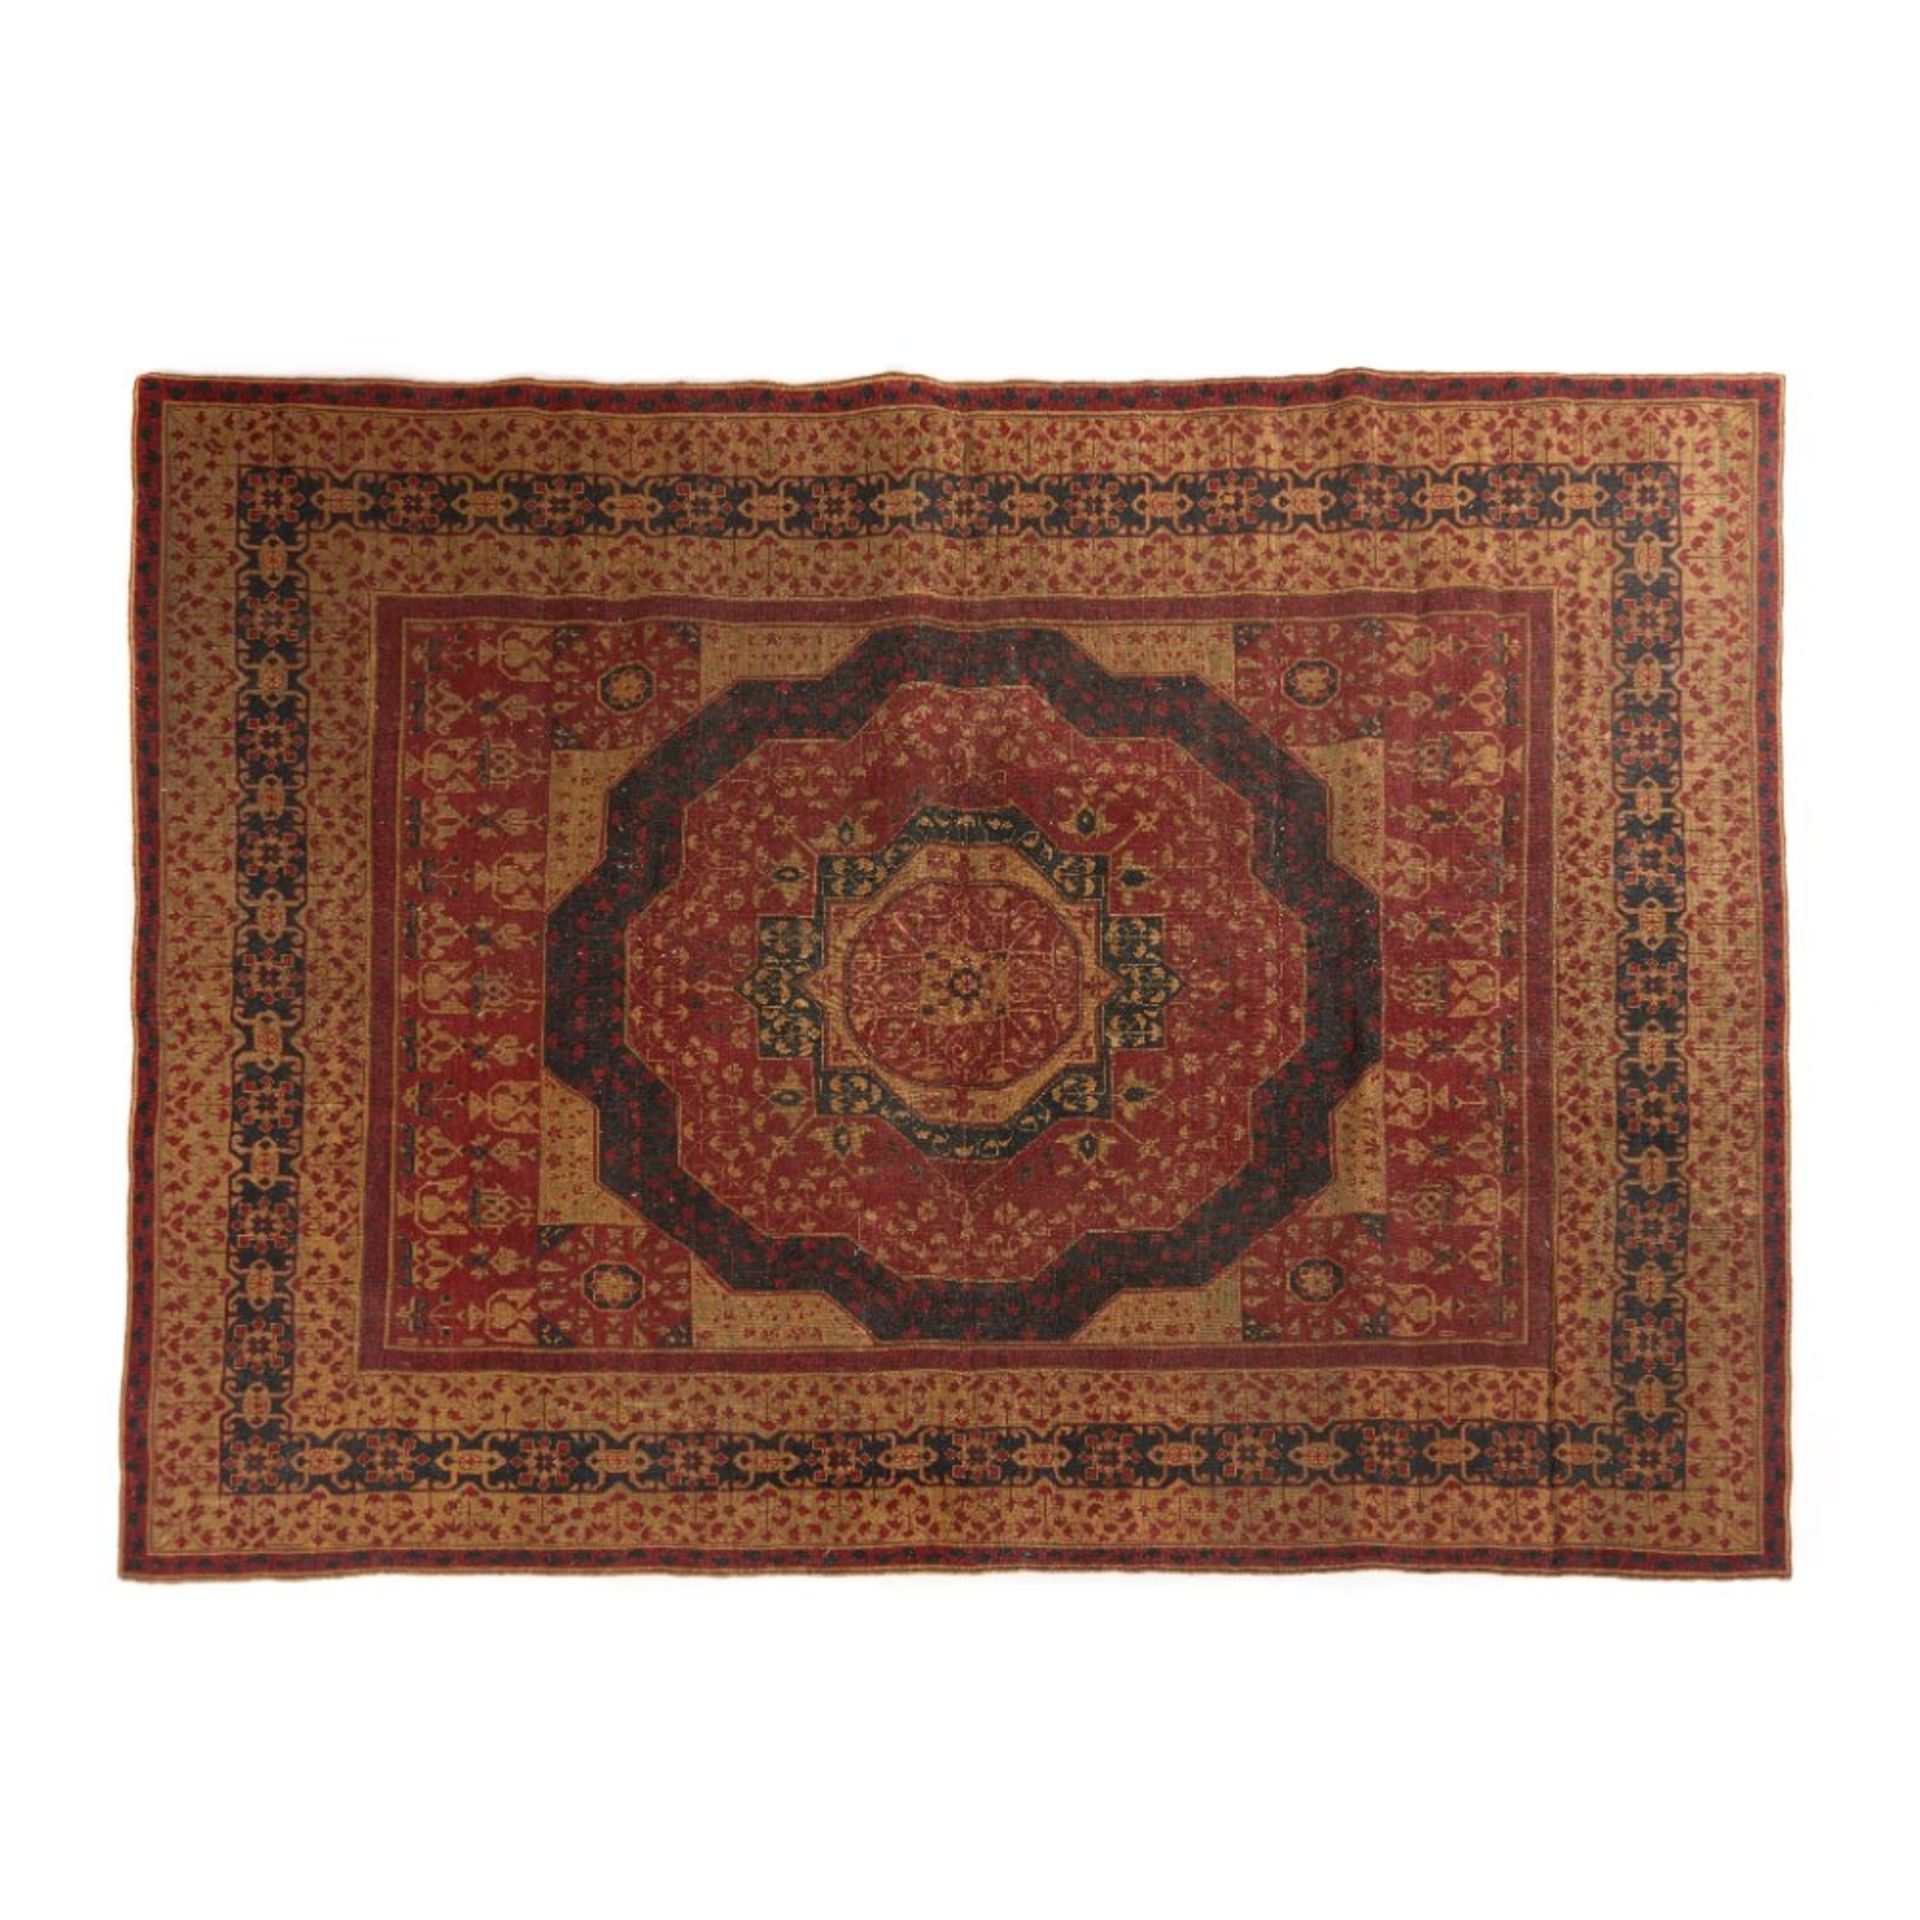 An Egyptian carpet